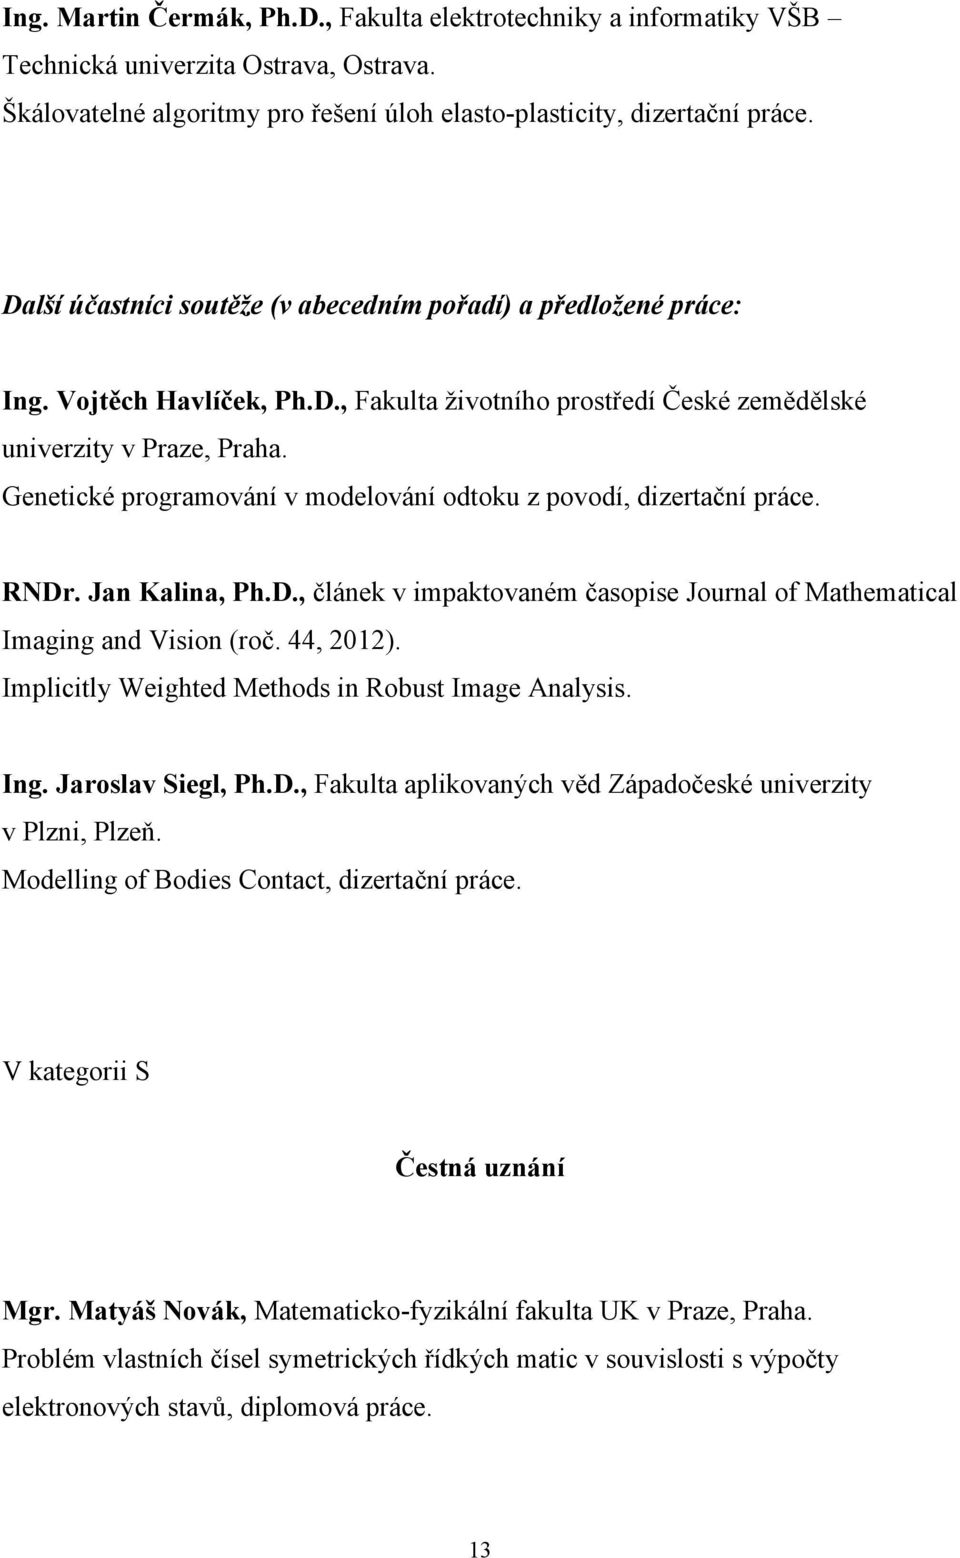 Genetické programování v modelování odtoku z povodí, dizertační práce. RNDr. Jan Kalina, Ph.D., článek v impaktovaném časopise Journal of Mathematical Imaging and Vision (roč. 44, 2012).